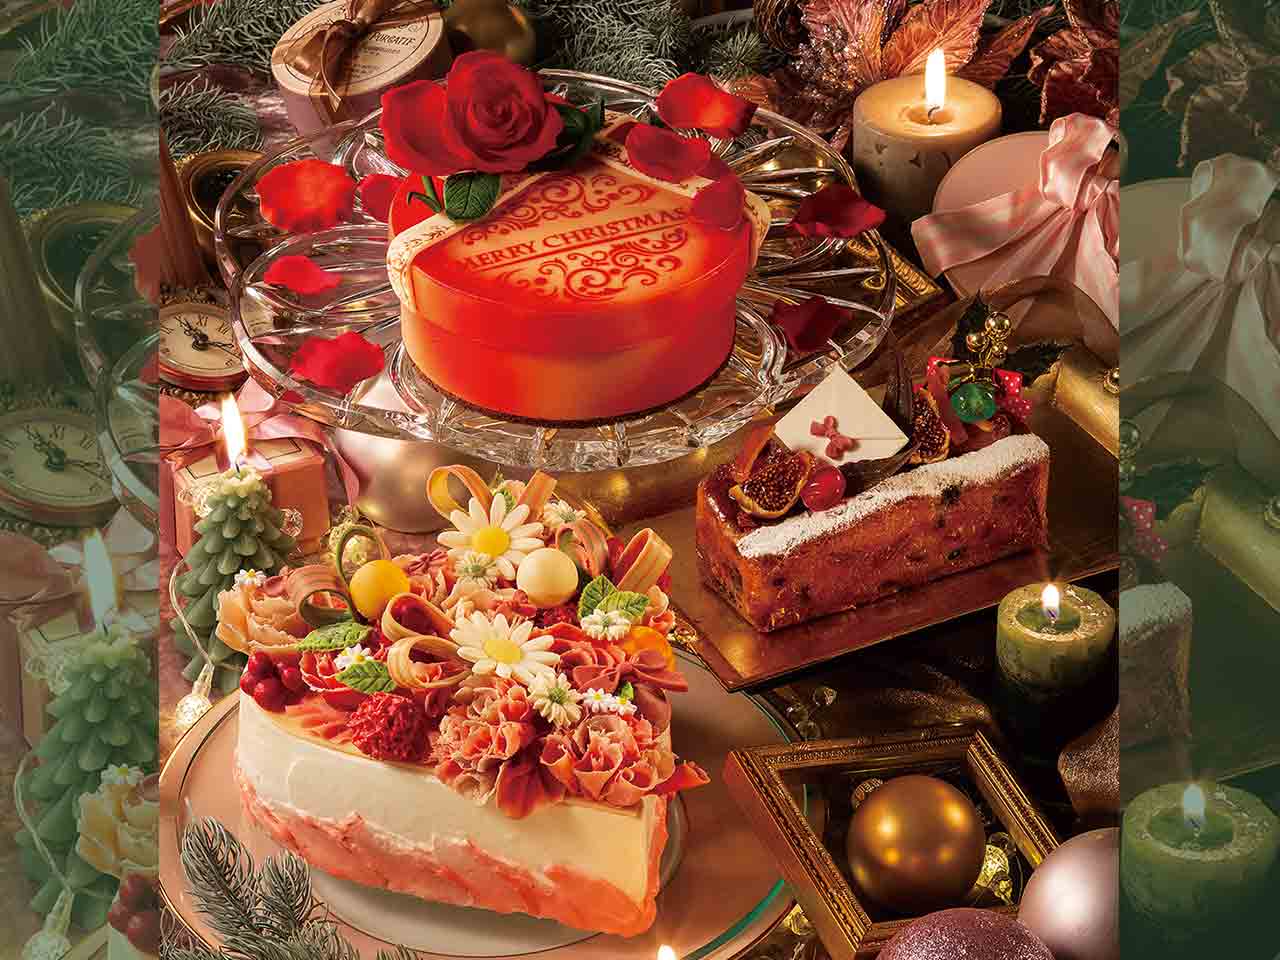 32年間の感謝の気持ちを込めた「京王プラザホテル多摩」の特別なクリスマスケーキの予約が始まります